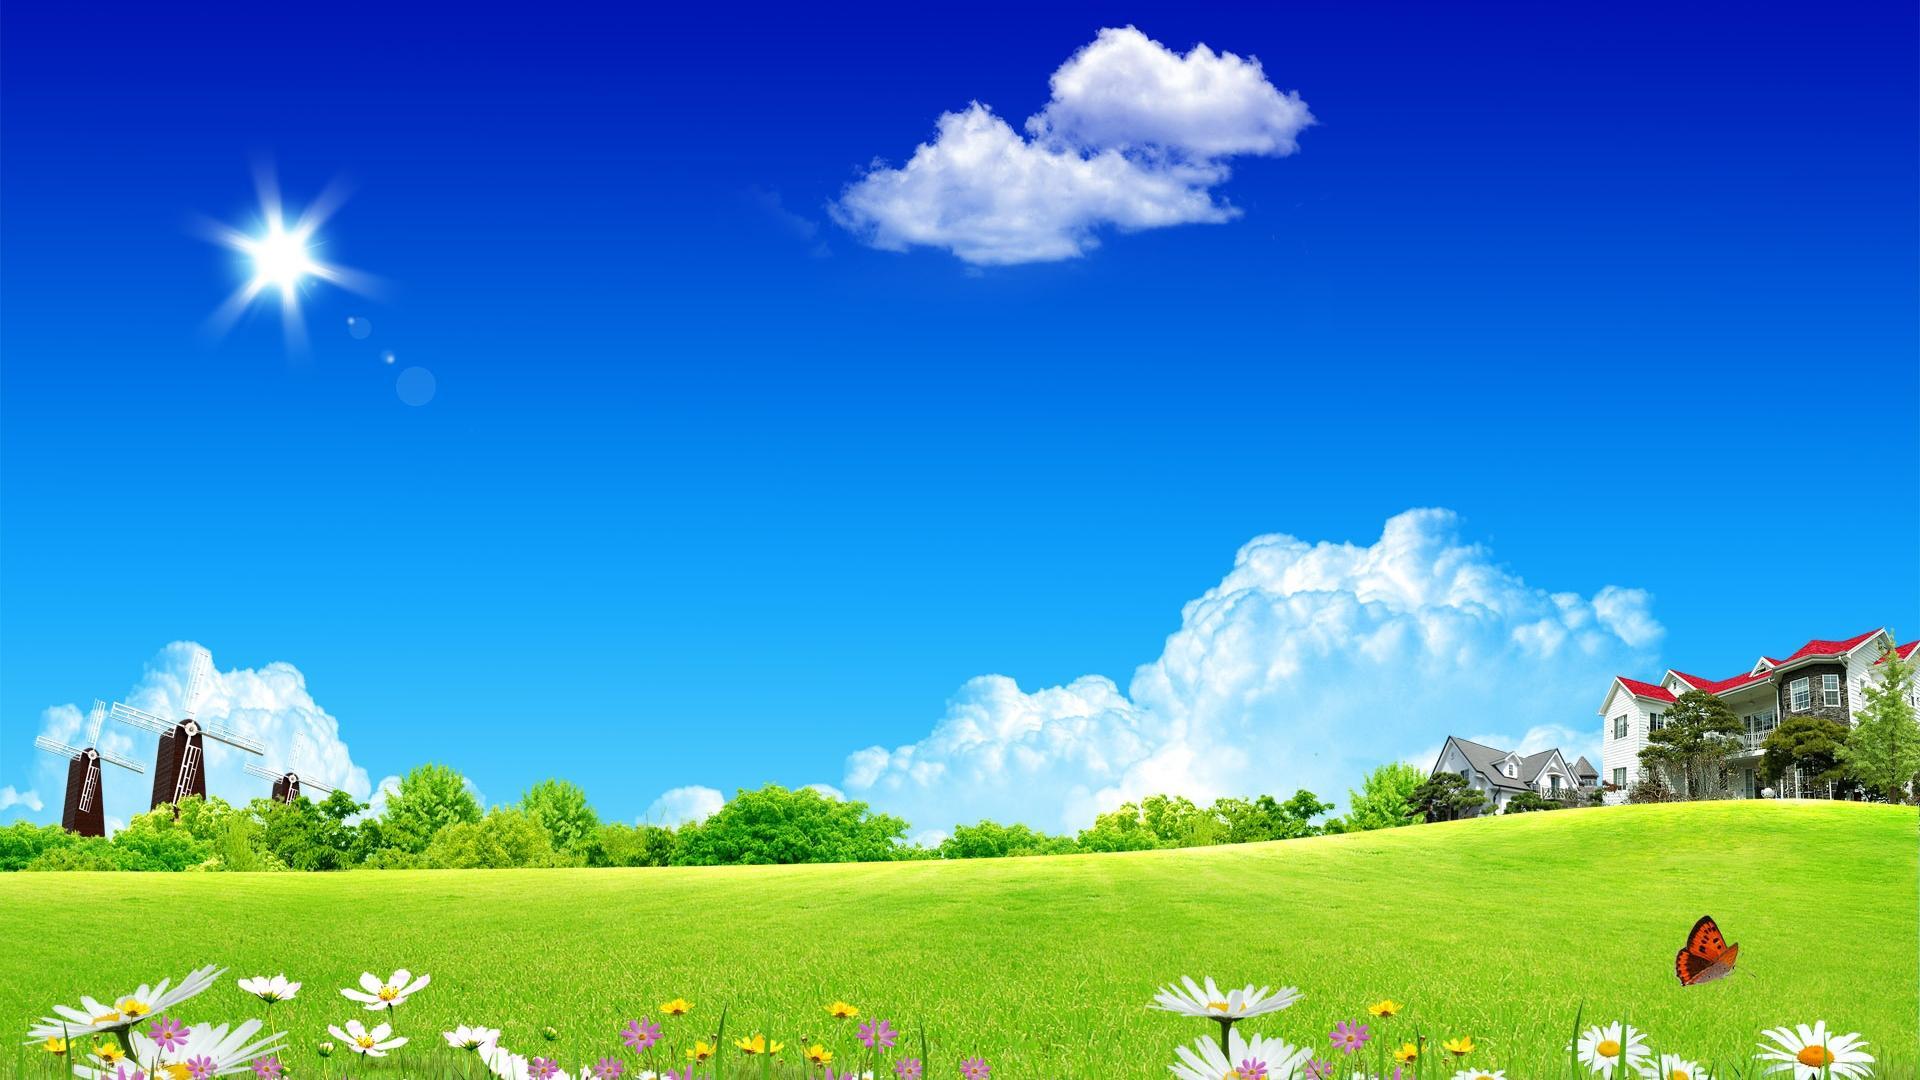 Dream Garden Of Summer Scenery Desktop Backgrounds Widescreen and